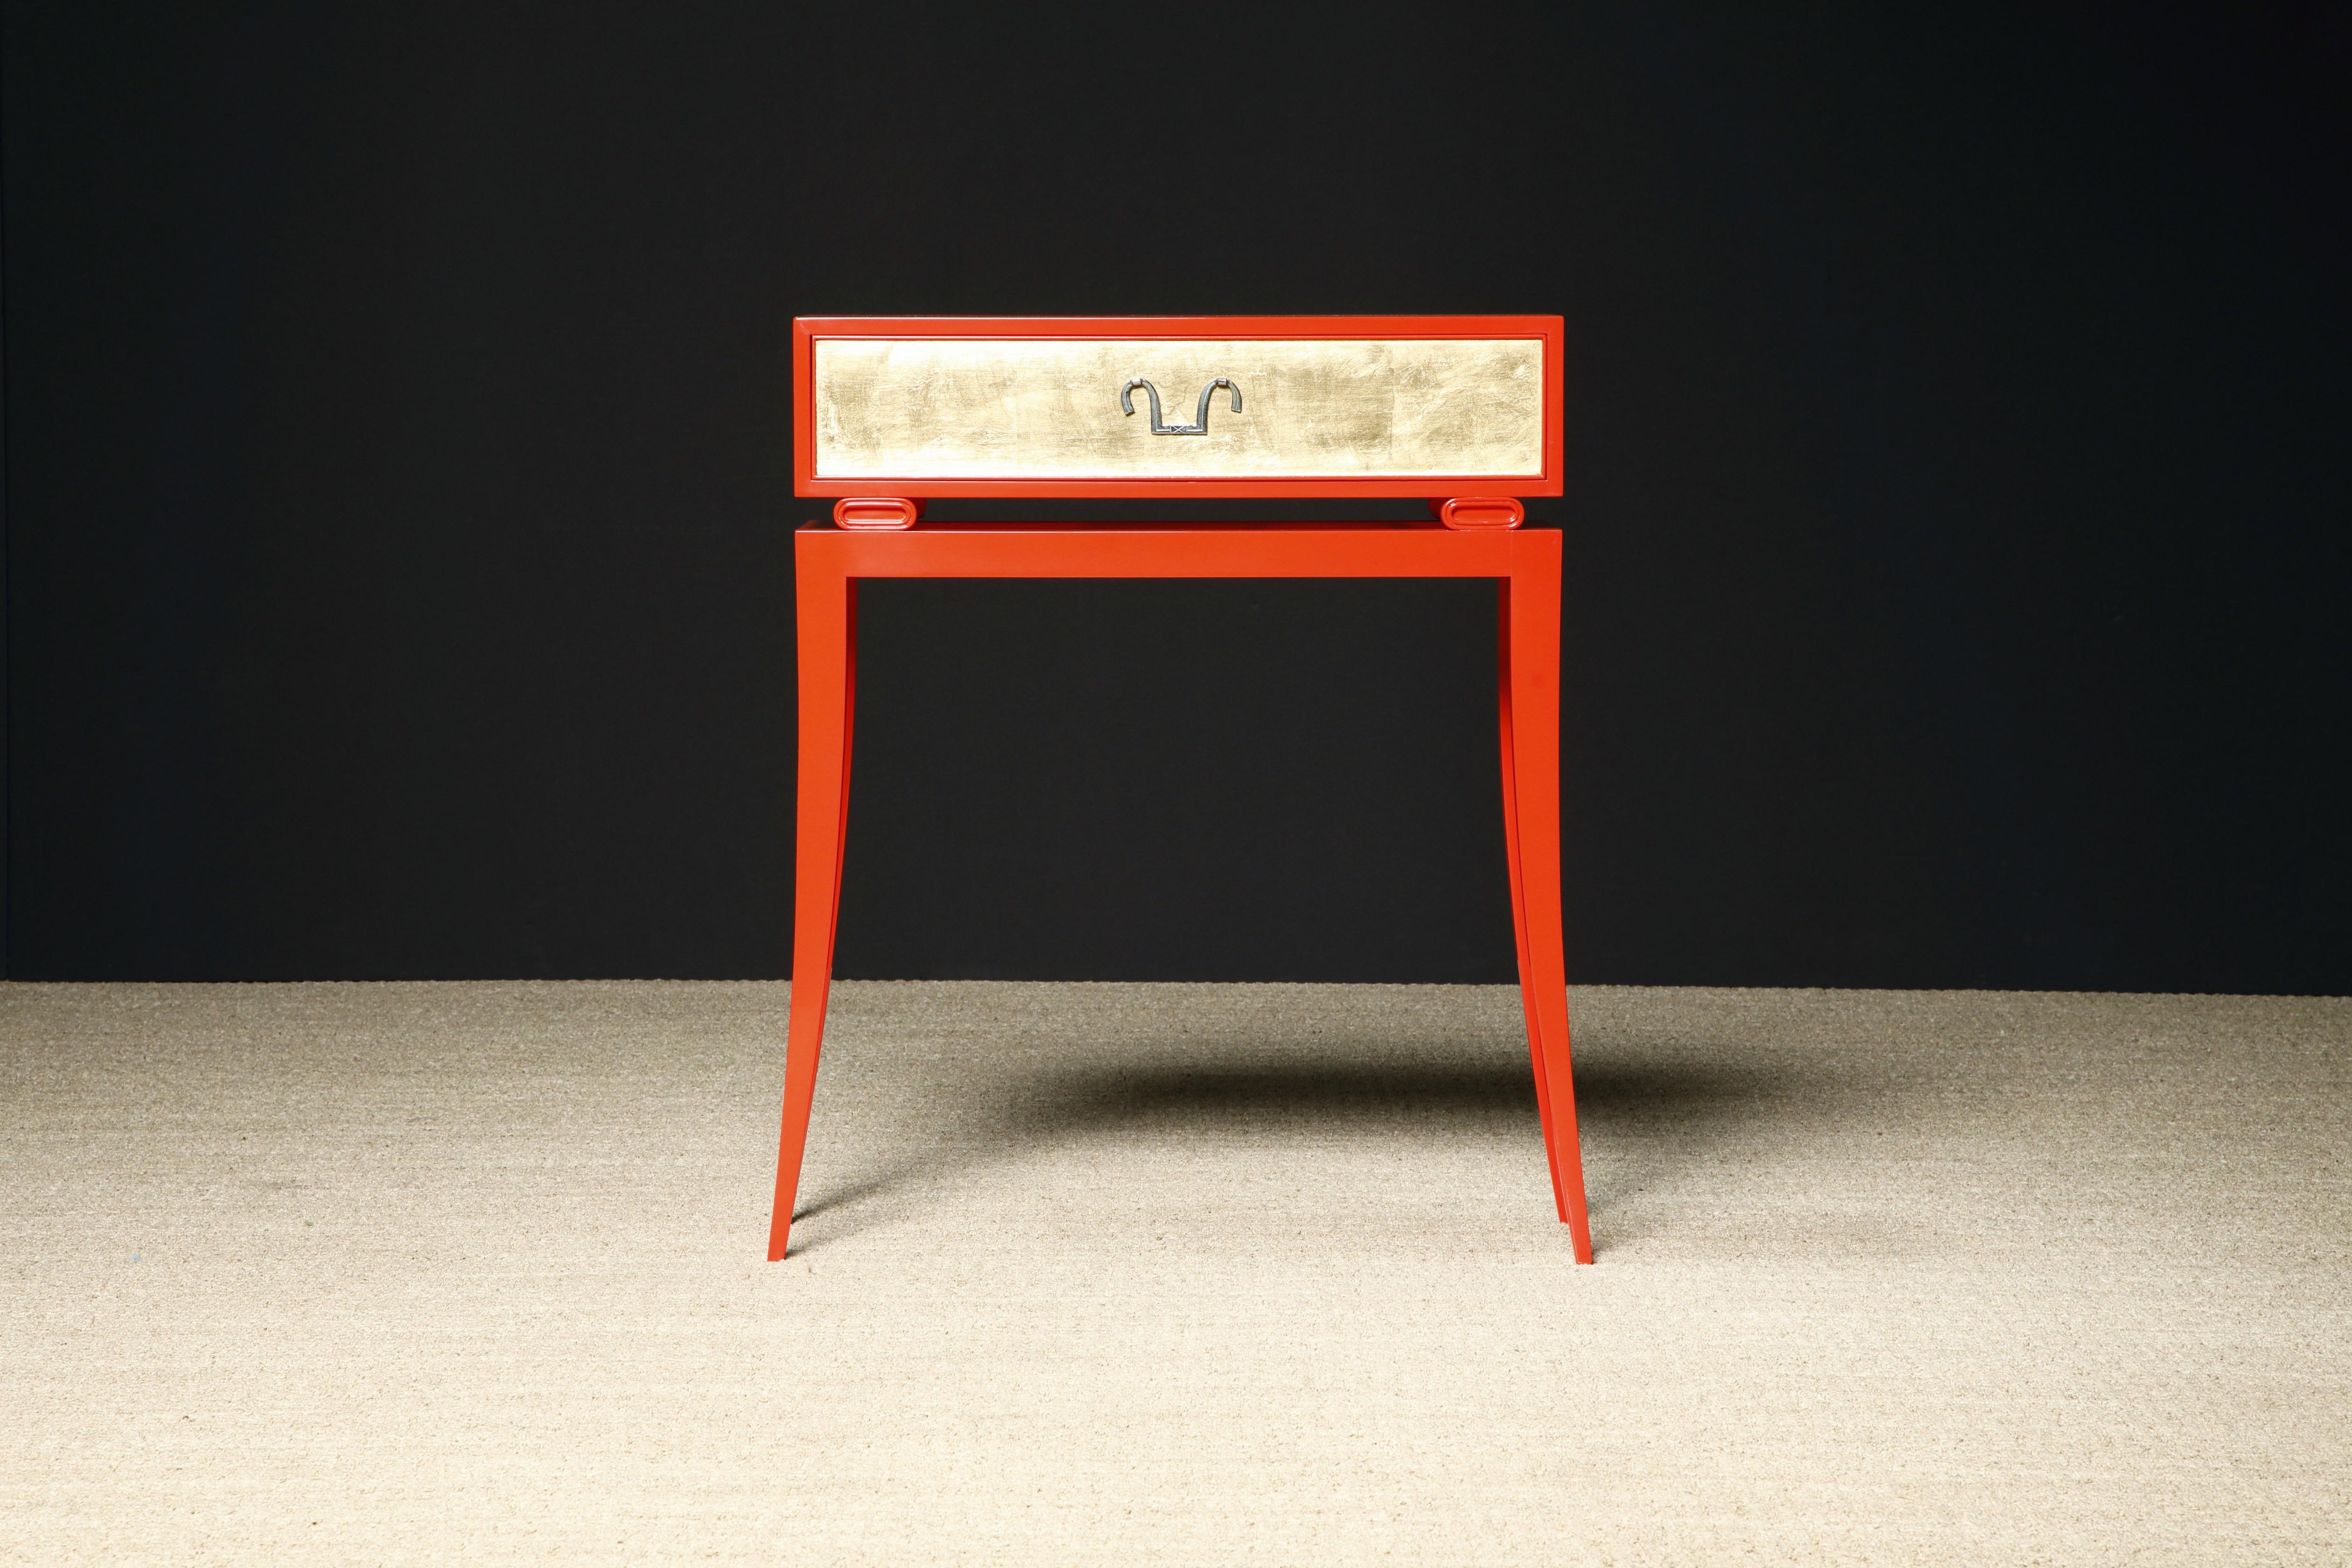 Pièce de collection rare et ancienne, cette console entièrement restaurée de Tommi Parzinger pour Charak Modern (c. 1949), qui peut également servir de petite table à écrire, présente une belle feuille d'or et un vernis français avec la poignée